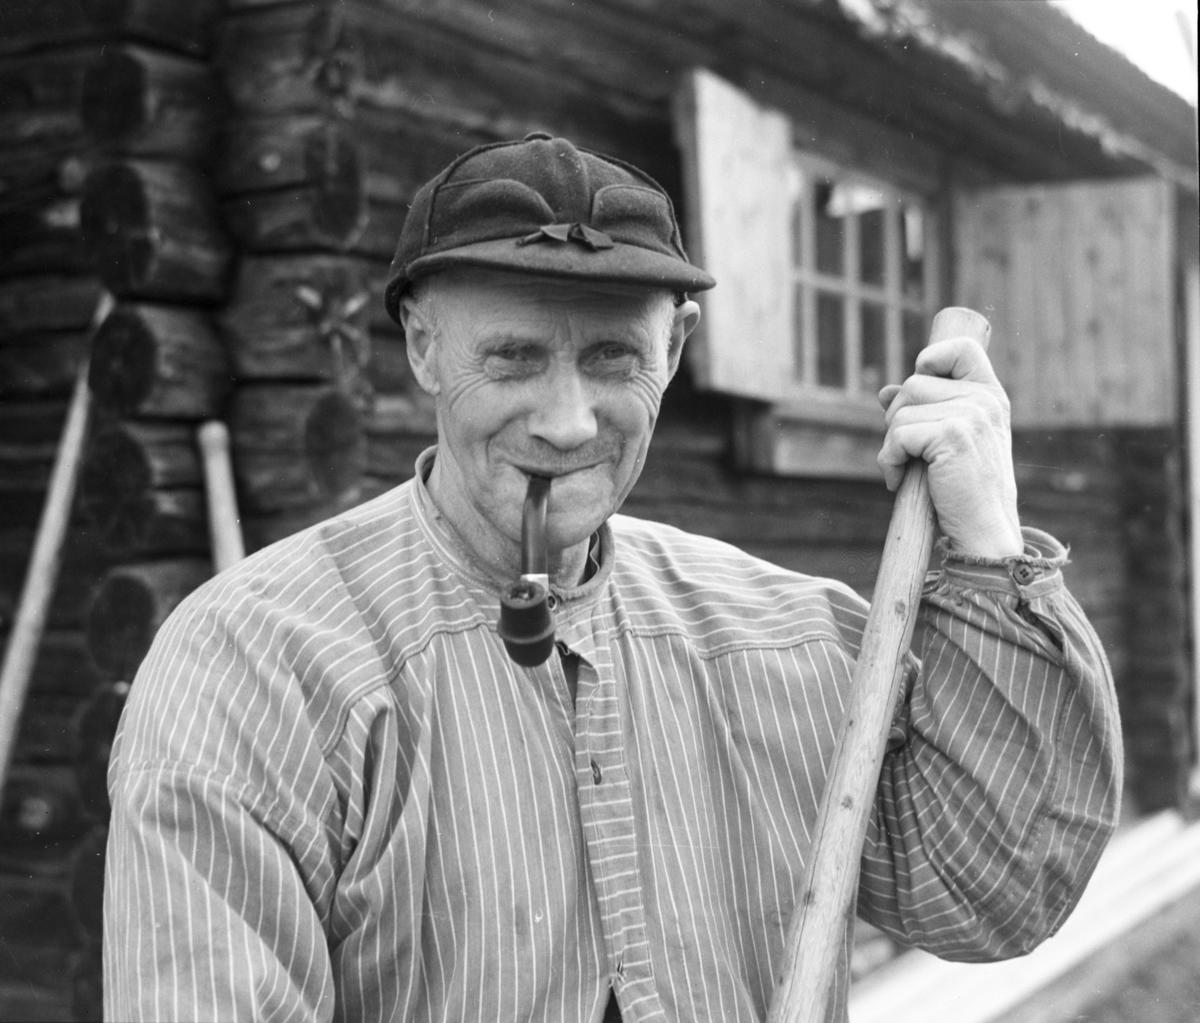 Ole Solberg, en kjent fløter fra Jømna, smiler med pipa i munnen og fløterhaka i henda